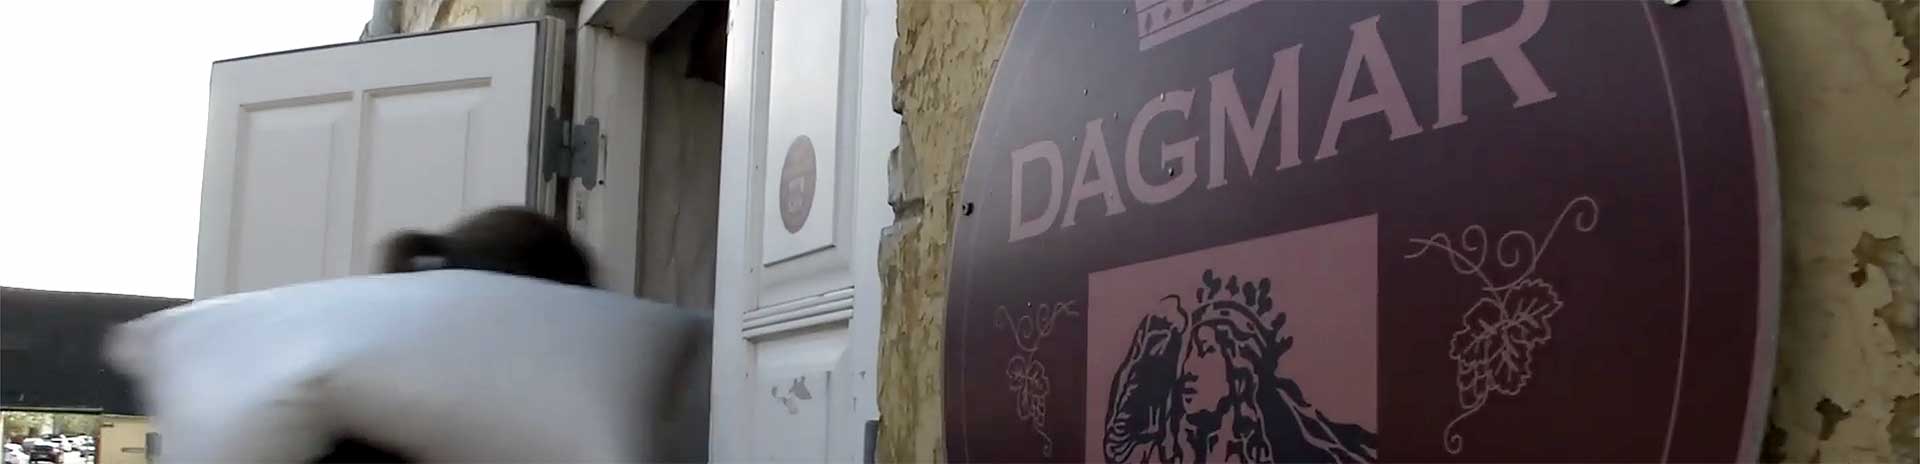 Dianalund Erhvervsnetværk gæstede Dagmar Bryggeriet i Ringsted